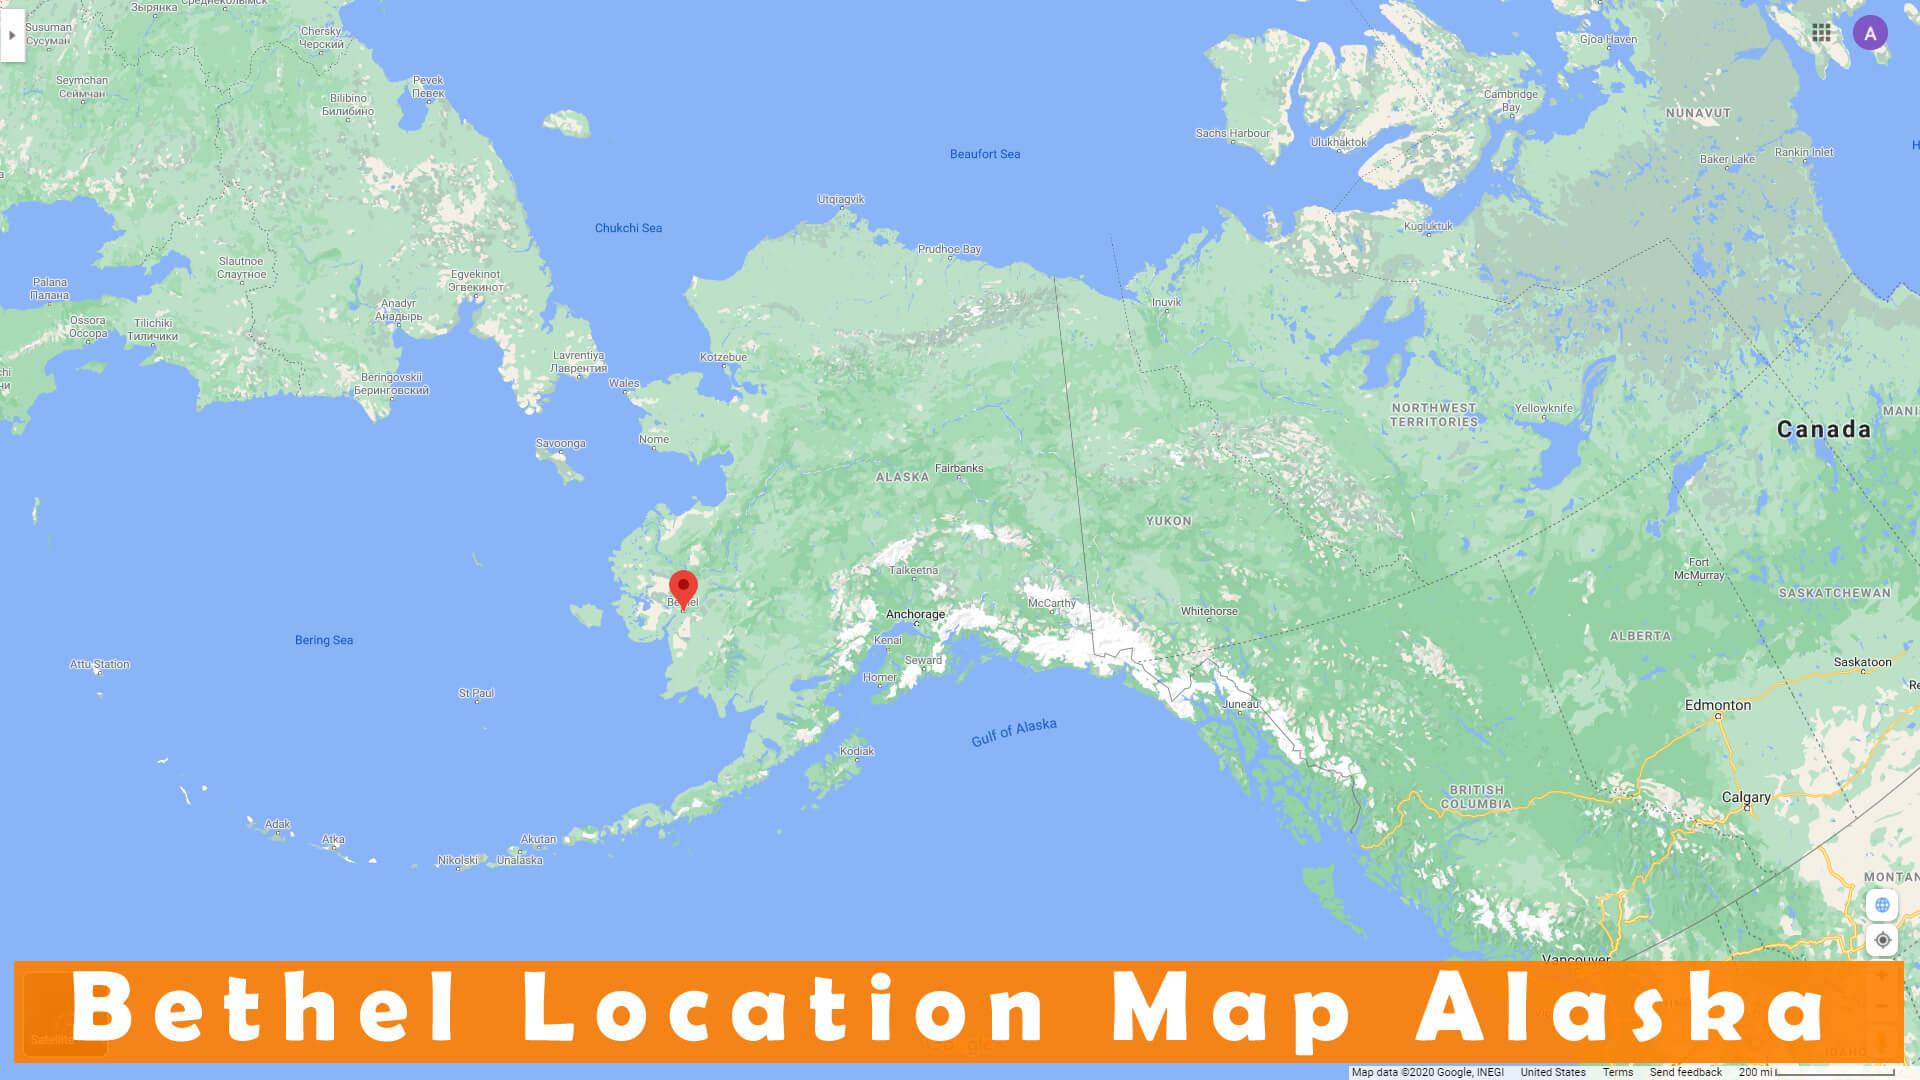 Bethel Location Map Alaska